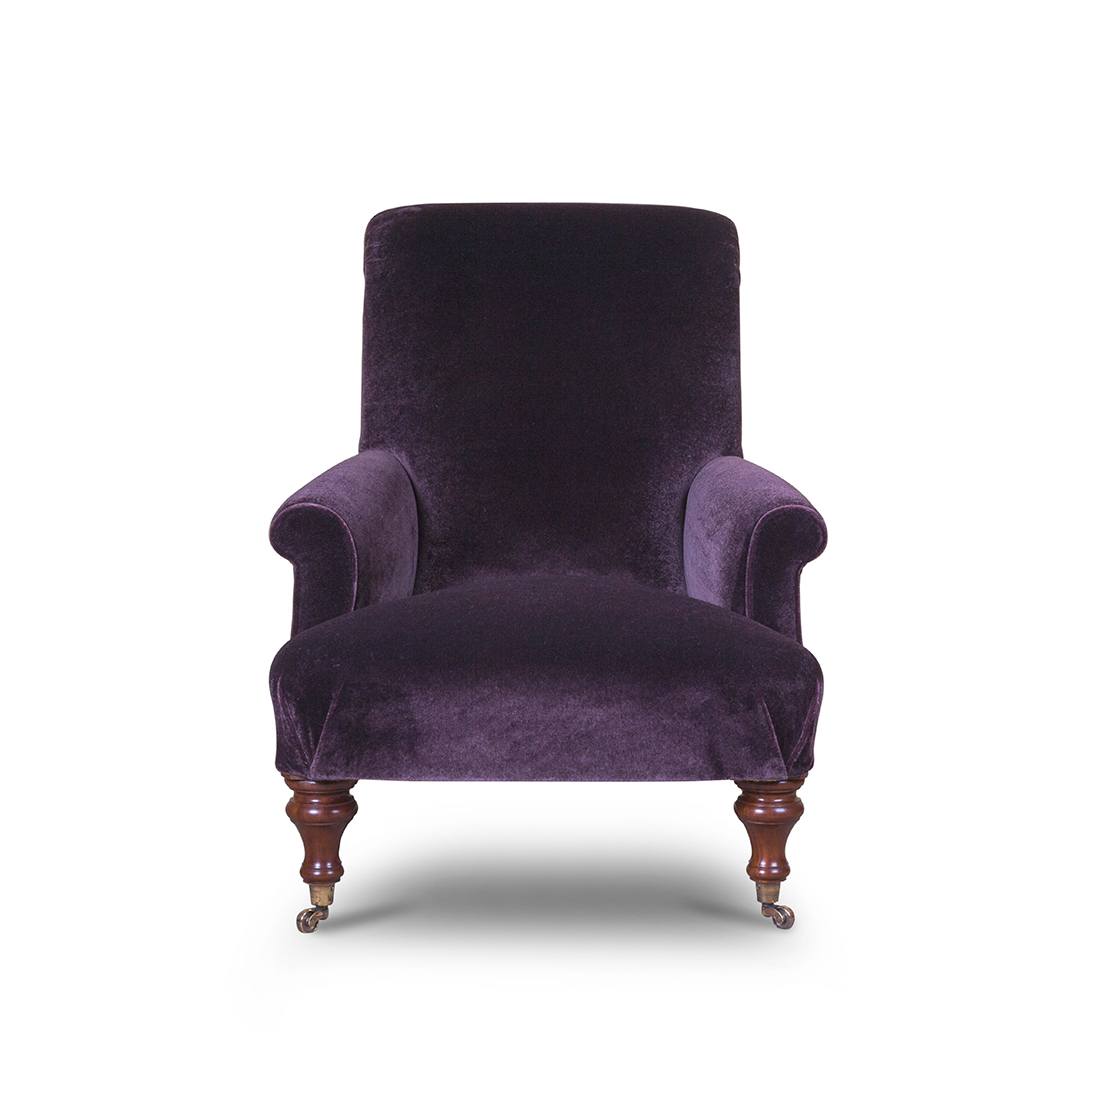 Palmerston chair in Casaleone mohair - Amethyst - Beaumont & Fletcher